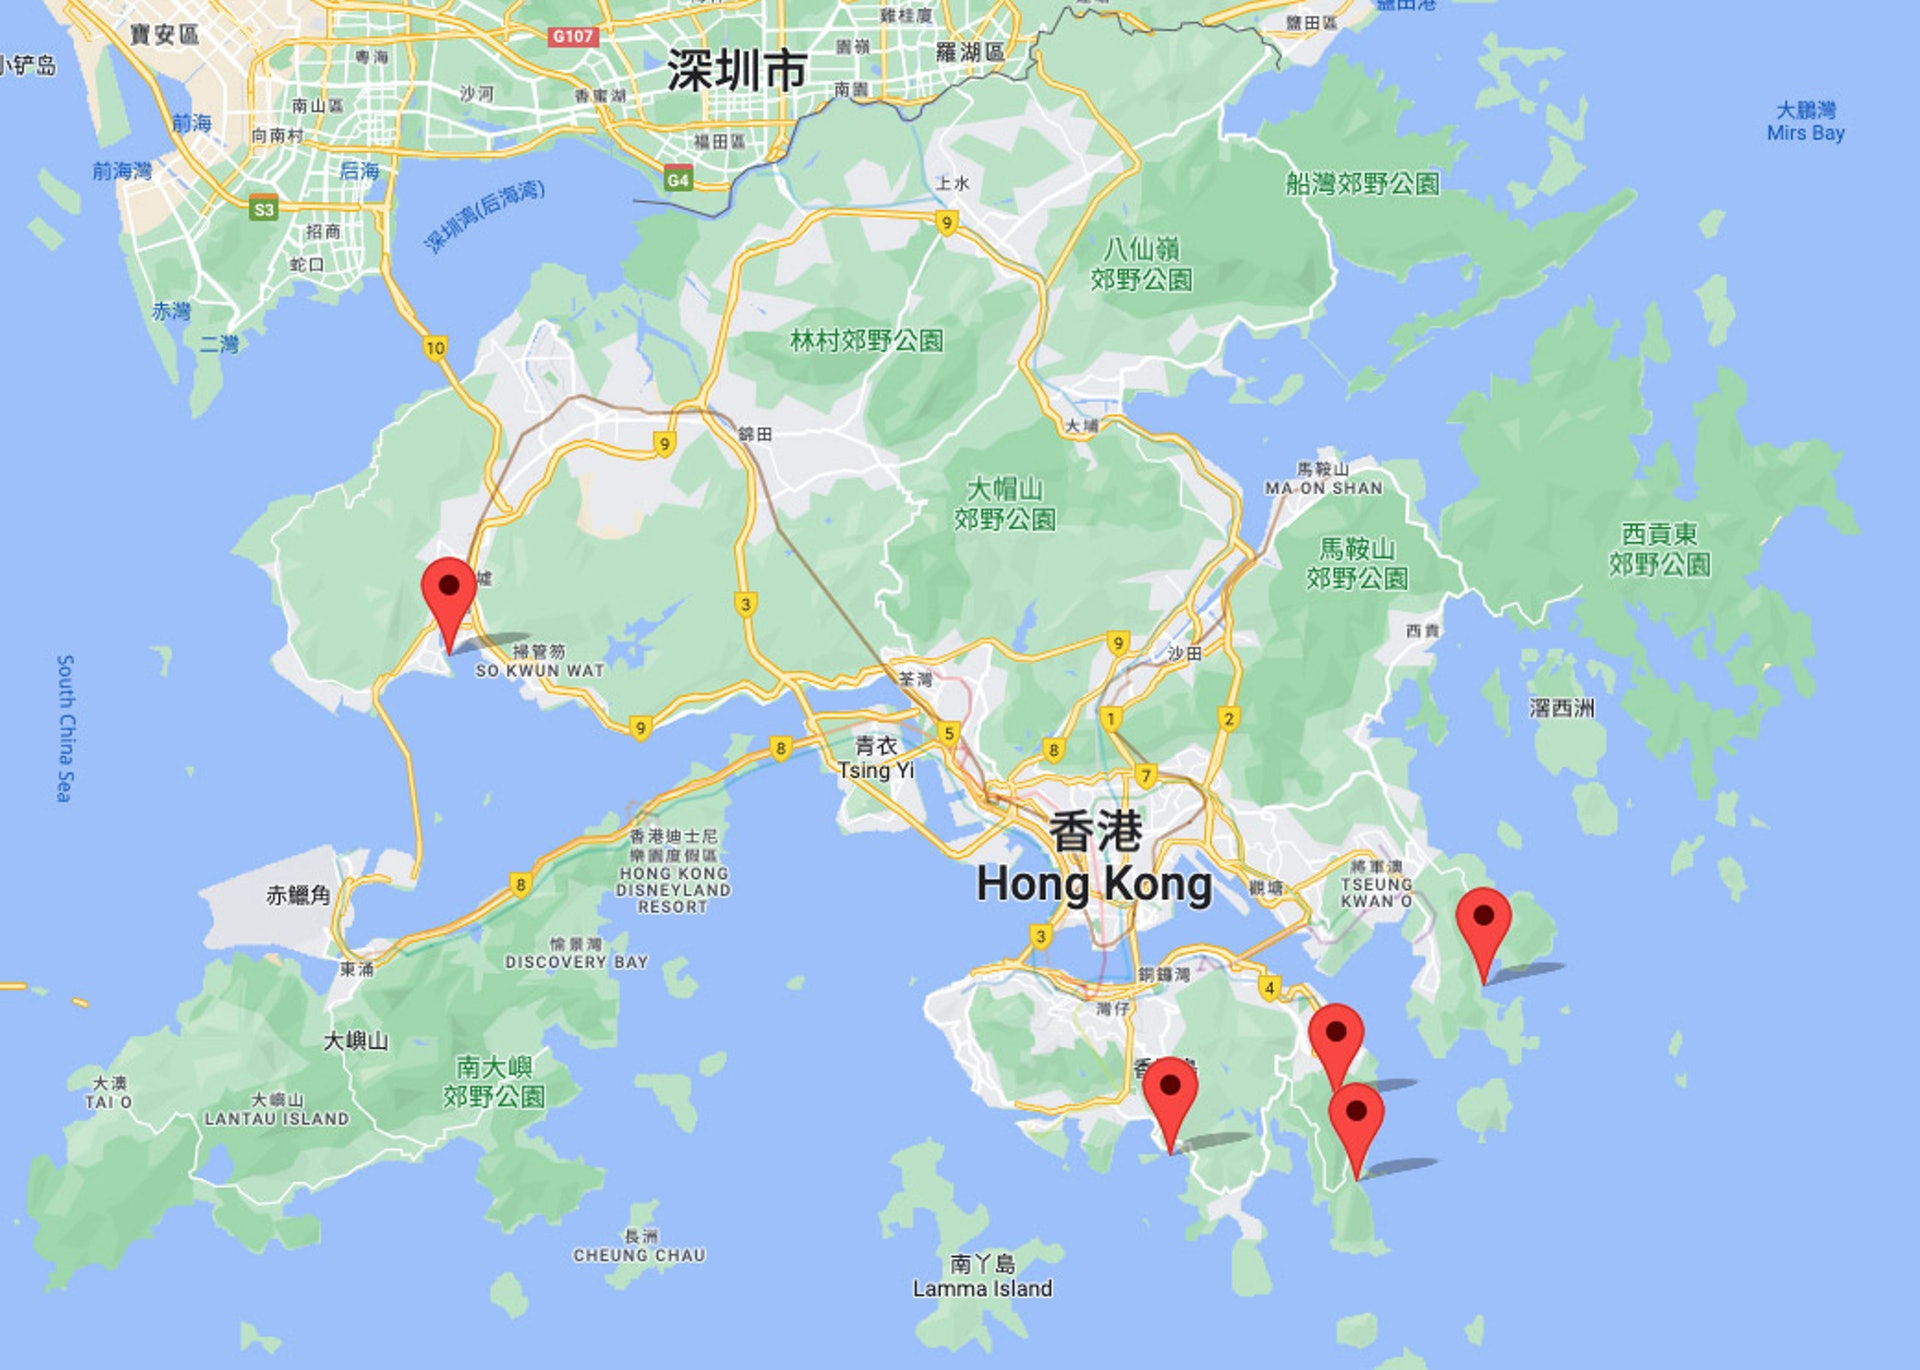 《香港01》科技玩物記者走訪香港 5 大熱門泳灘，並實地測試香港 4 大電訊商在各大泳灘的實地 5G 網絡接收速度。